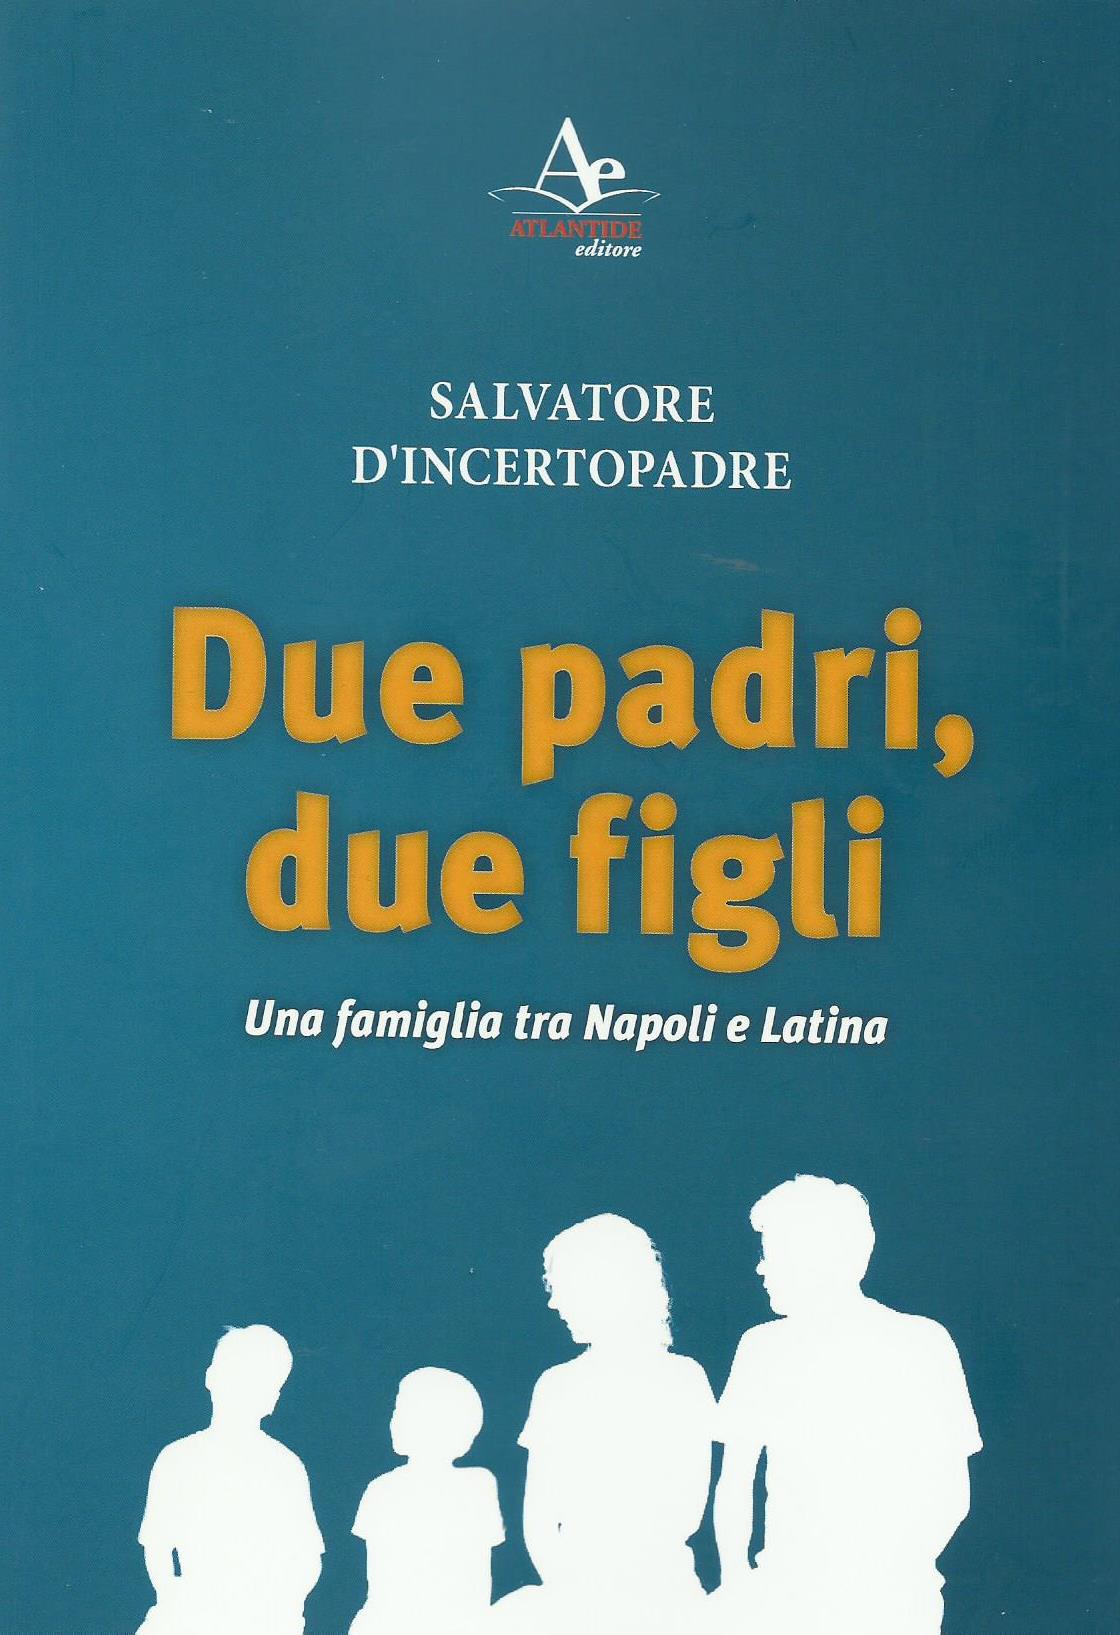 Libri: “Due padri, due figli. Una famiglia tra Napoli e Latina” di Salvatore D’Incertopadre